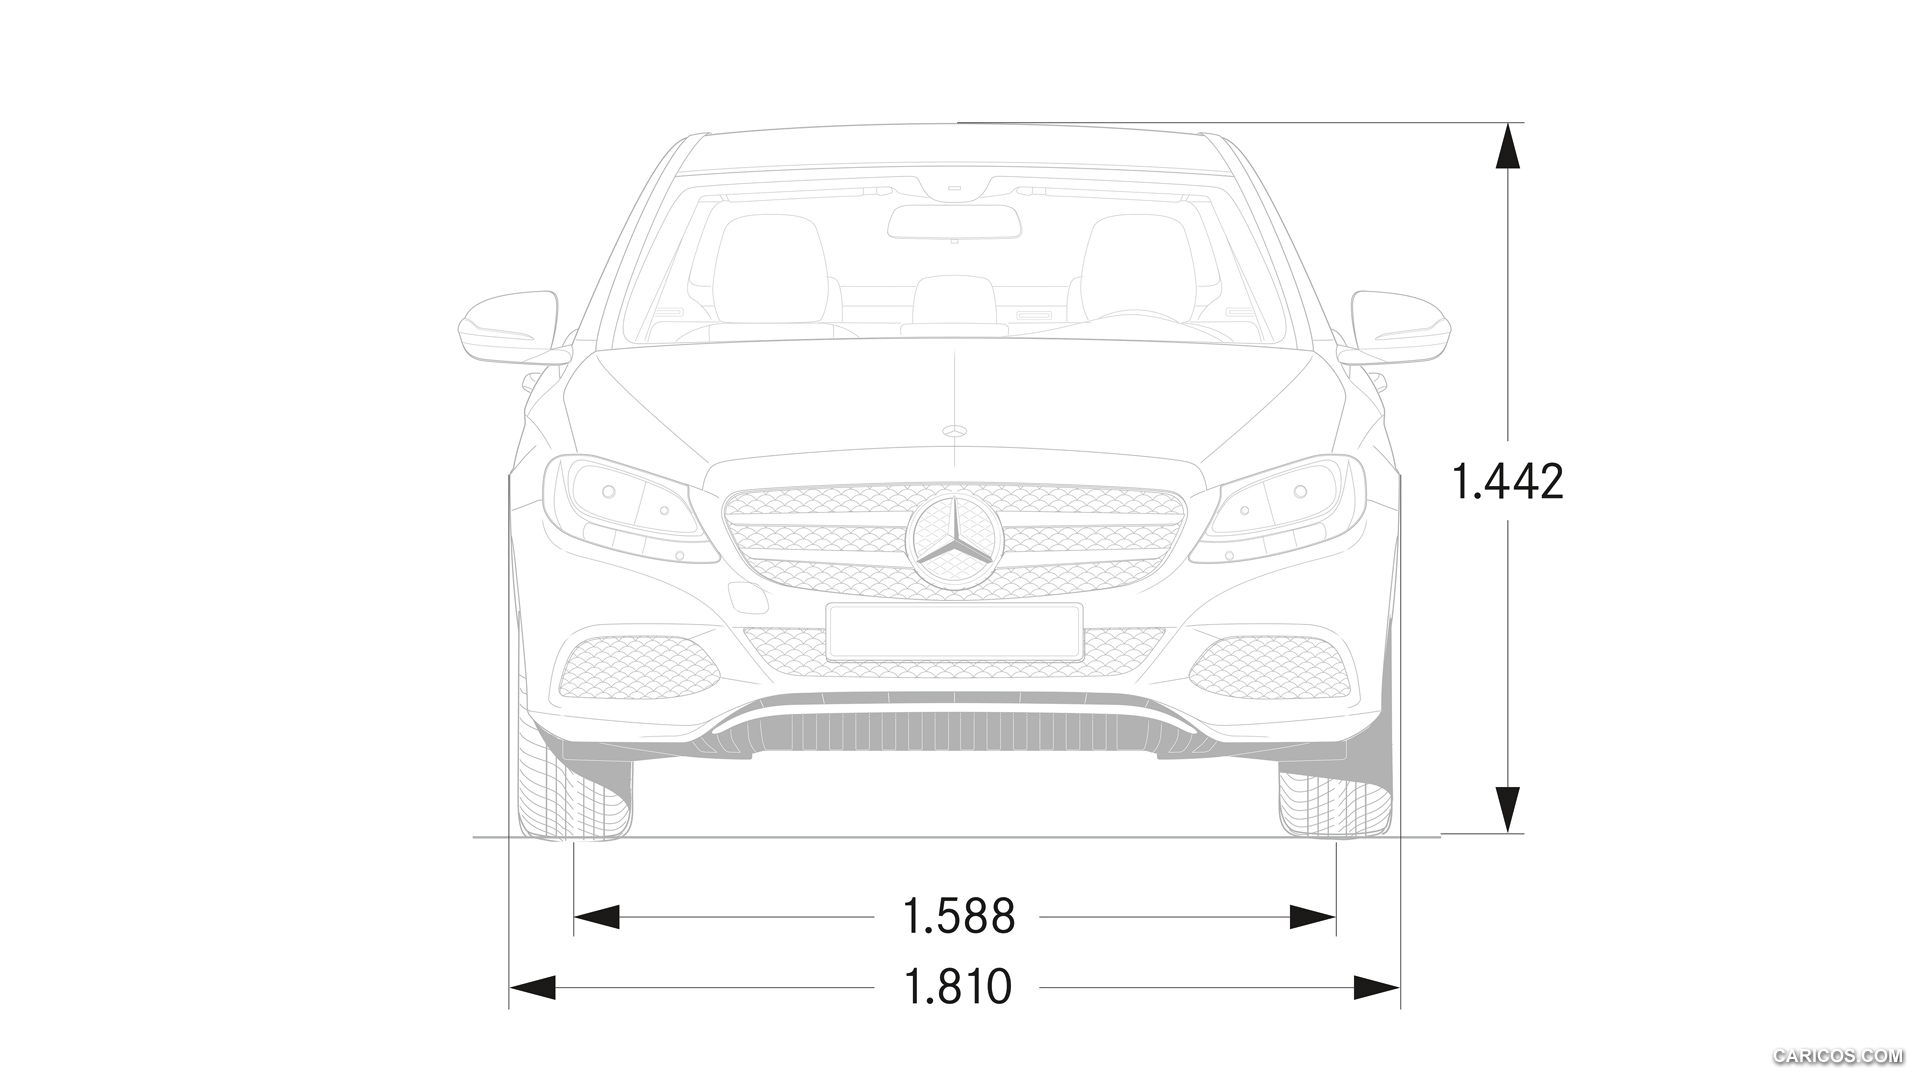 2015 Mercedes-Benz C-Class  - Dimensions, #102 of 181